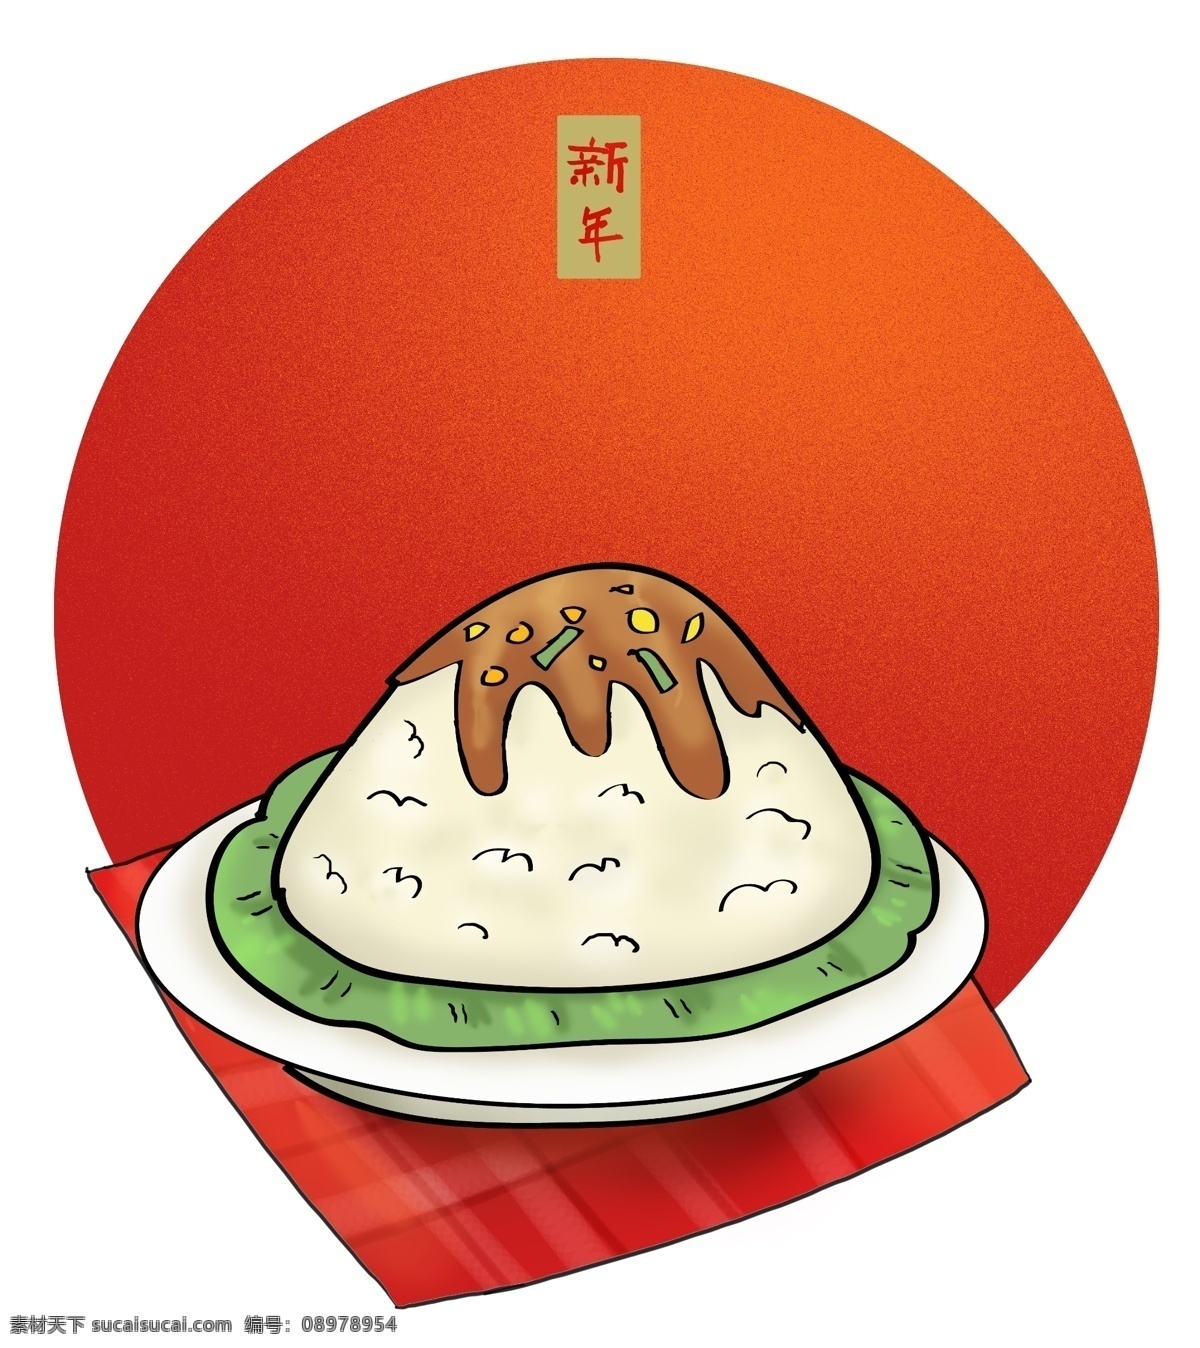 中国 农历 新年 传统 美食 春节 元旦 中国风 食物 拜年 农历新年 中国传统美食 盖浇饭 传统小吃